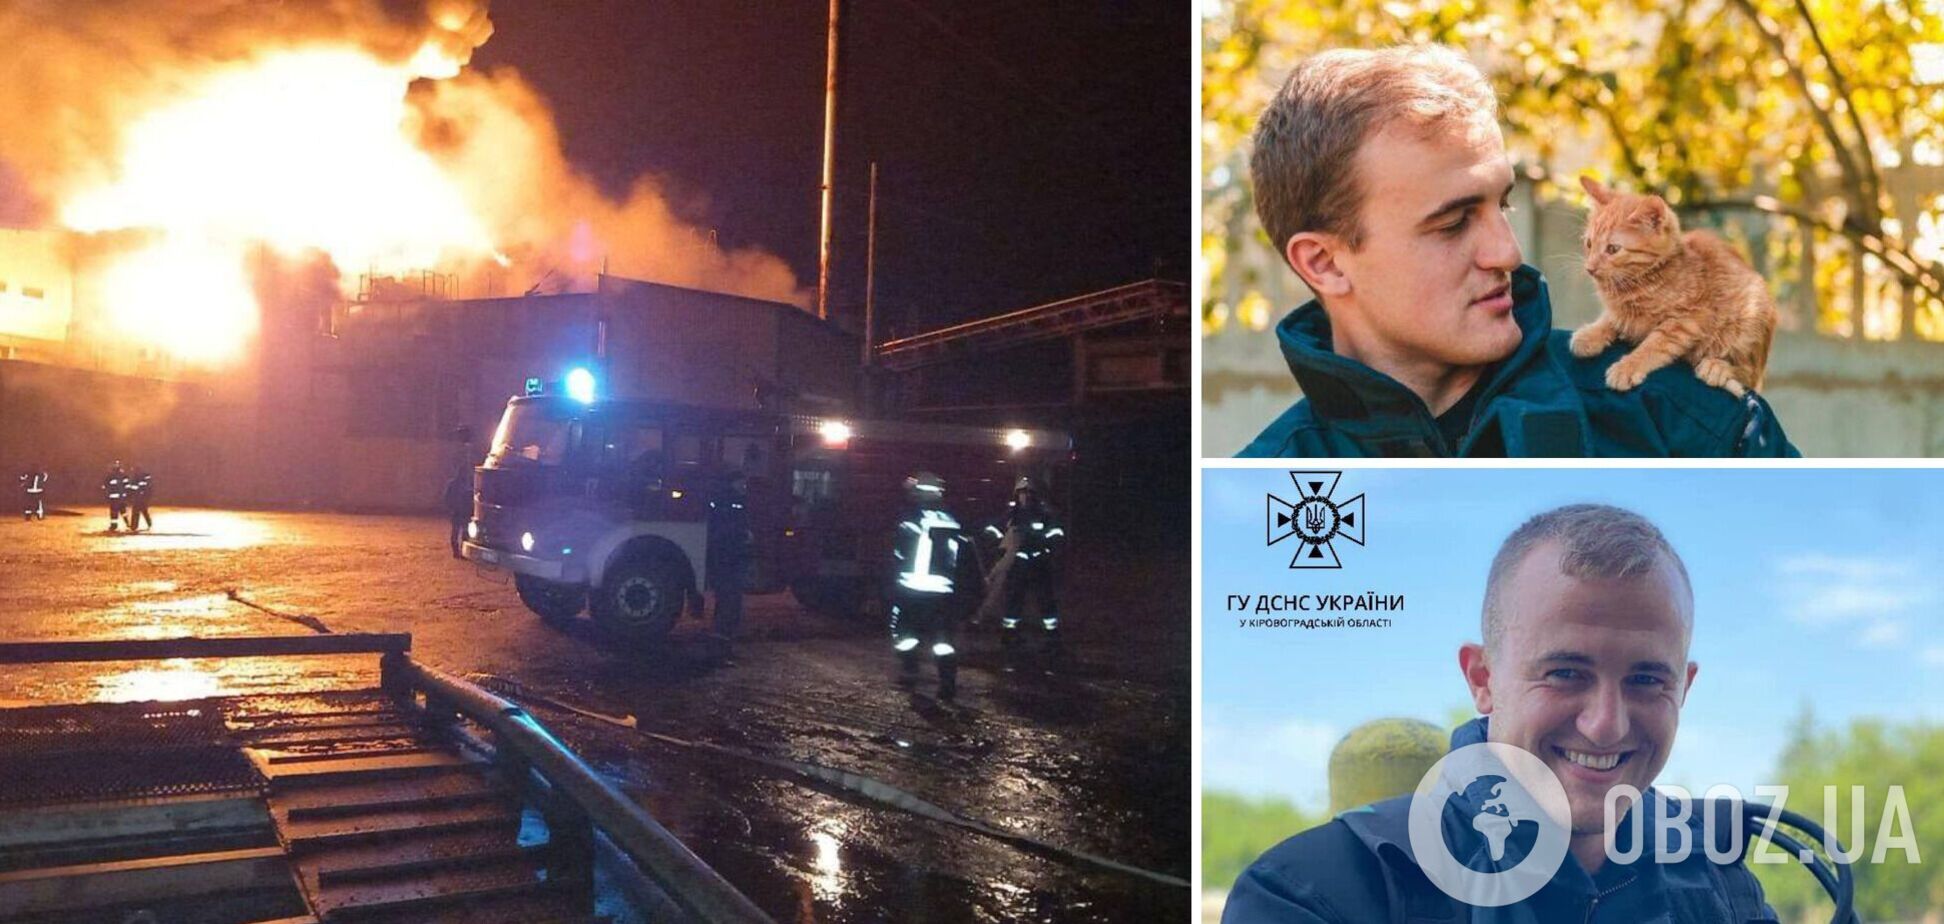 Йому назавжди буде 29: на Кіровоградщині під час ліквідації пожежі загинув молодий рятувальник. Фото